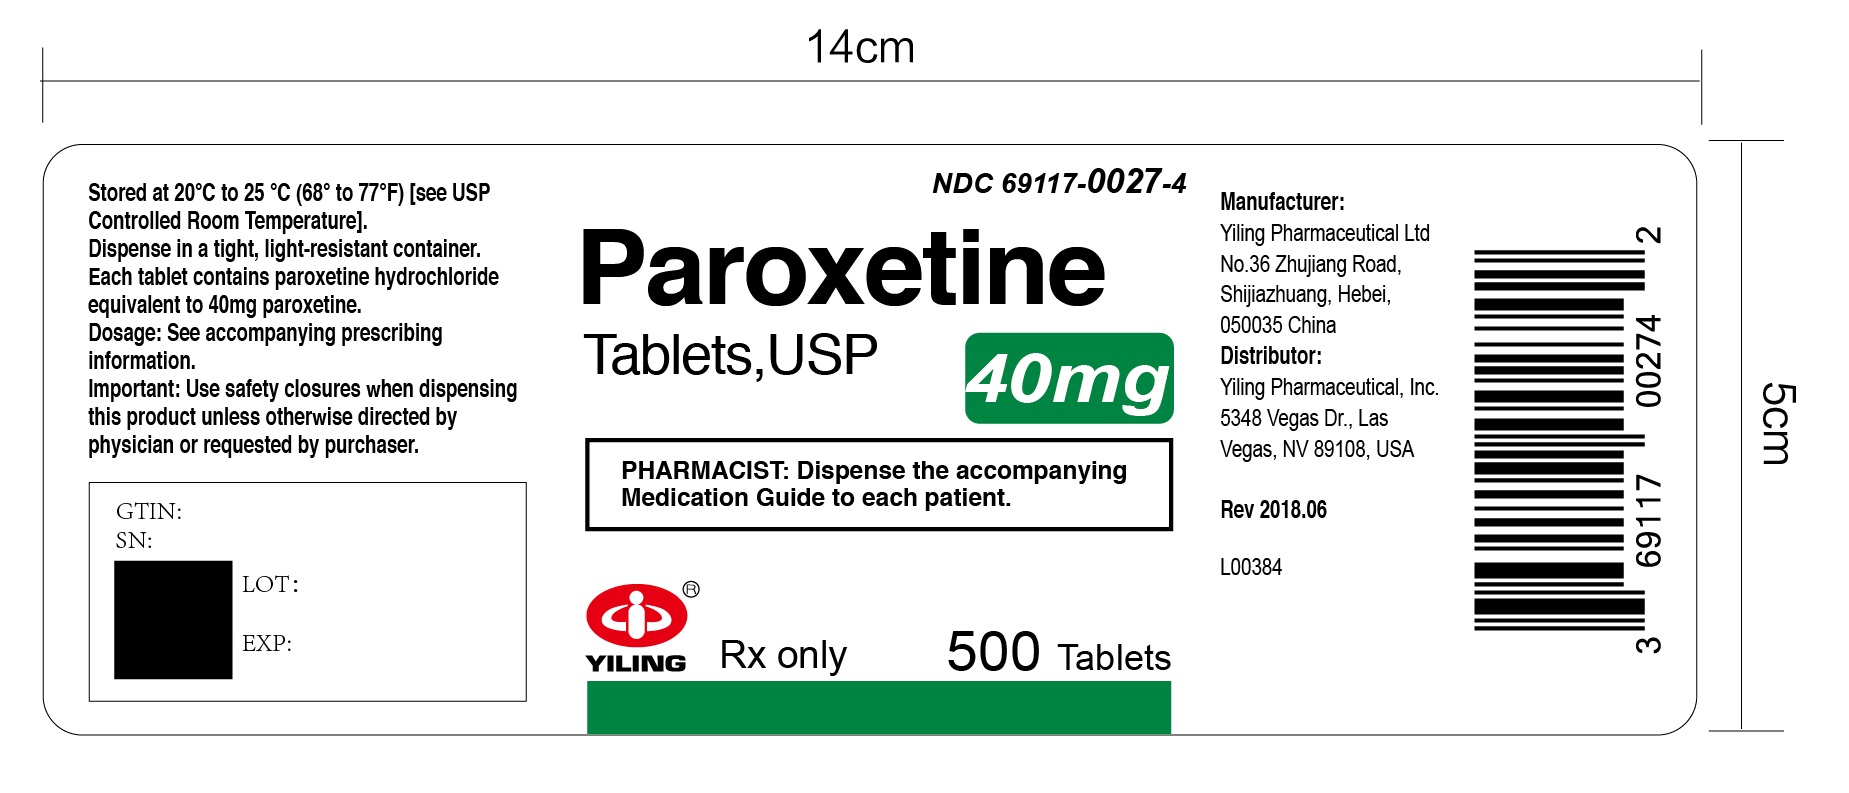 paroxetine-40mg 500s